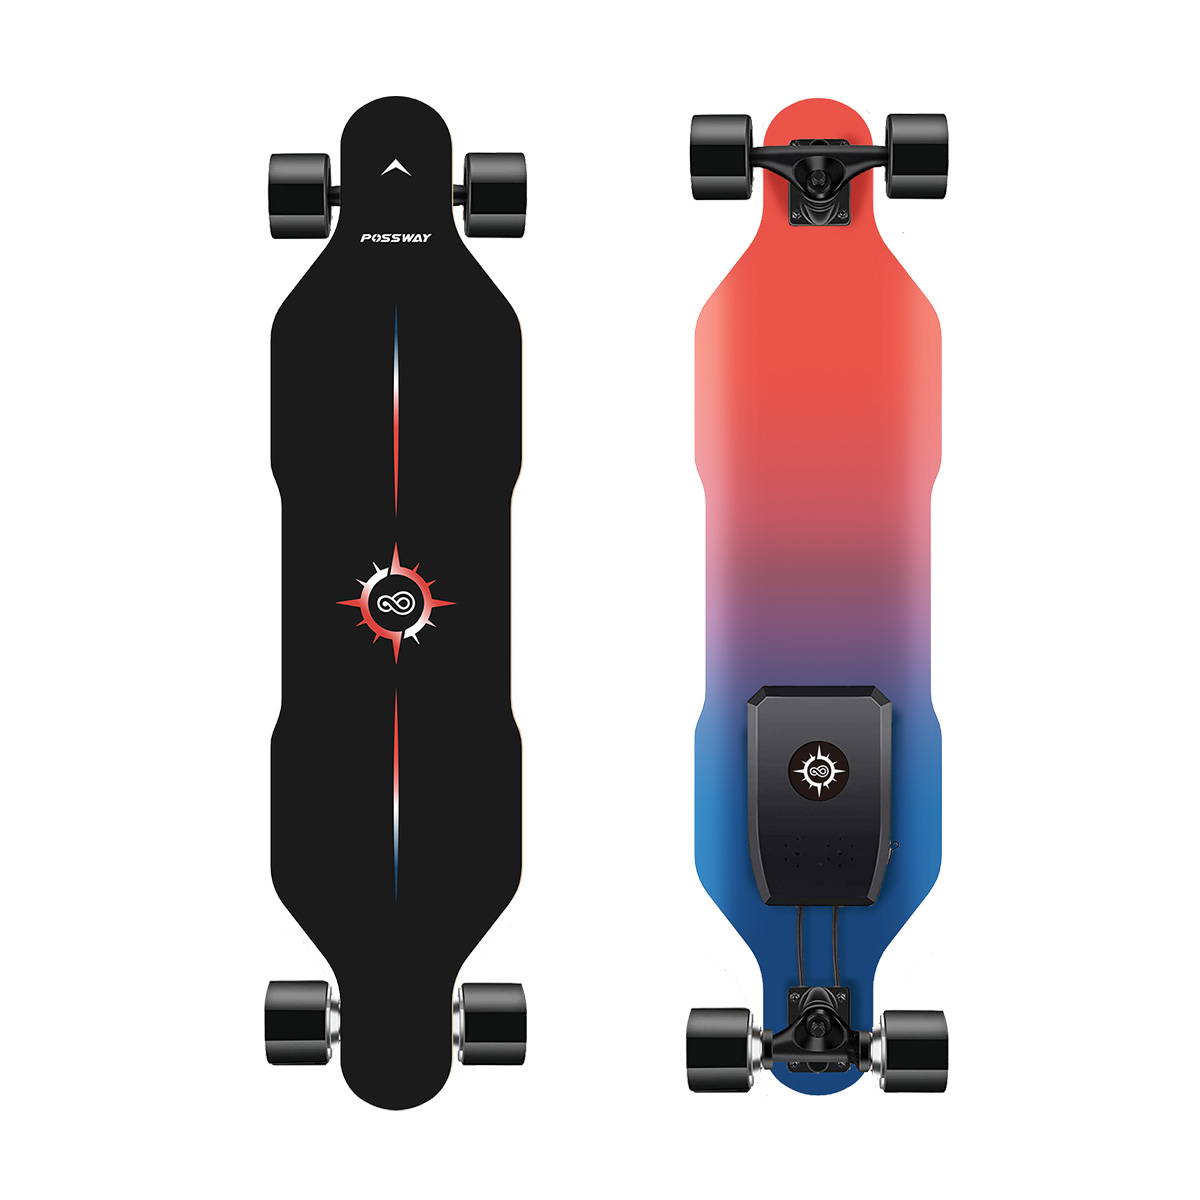 POSSWAY V4 Electric Skateboard